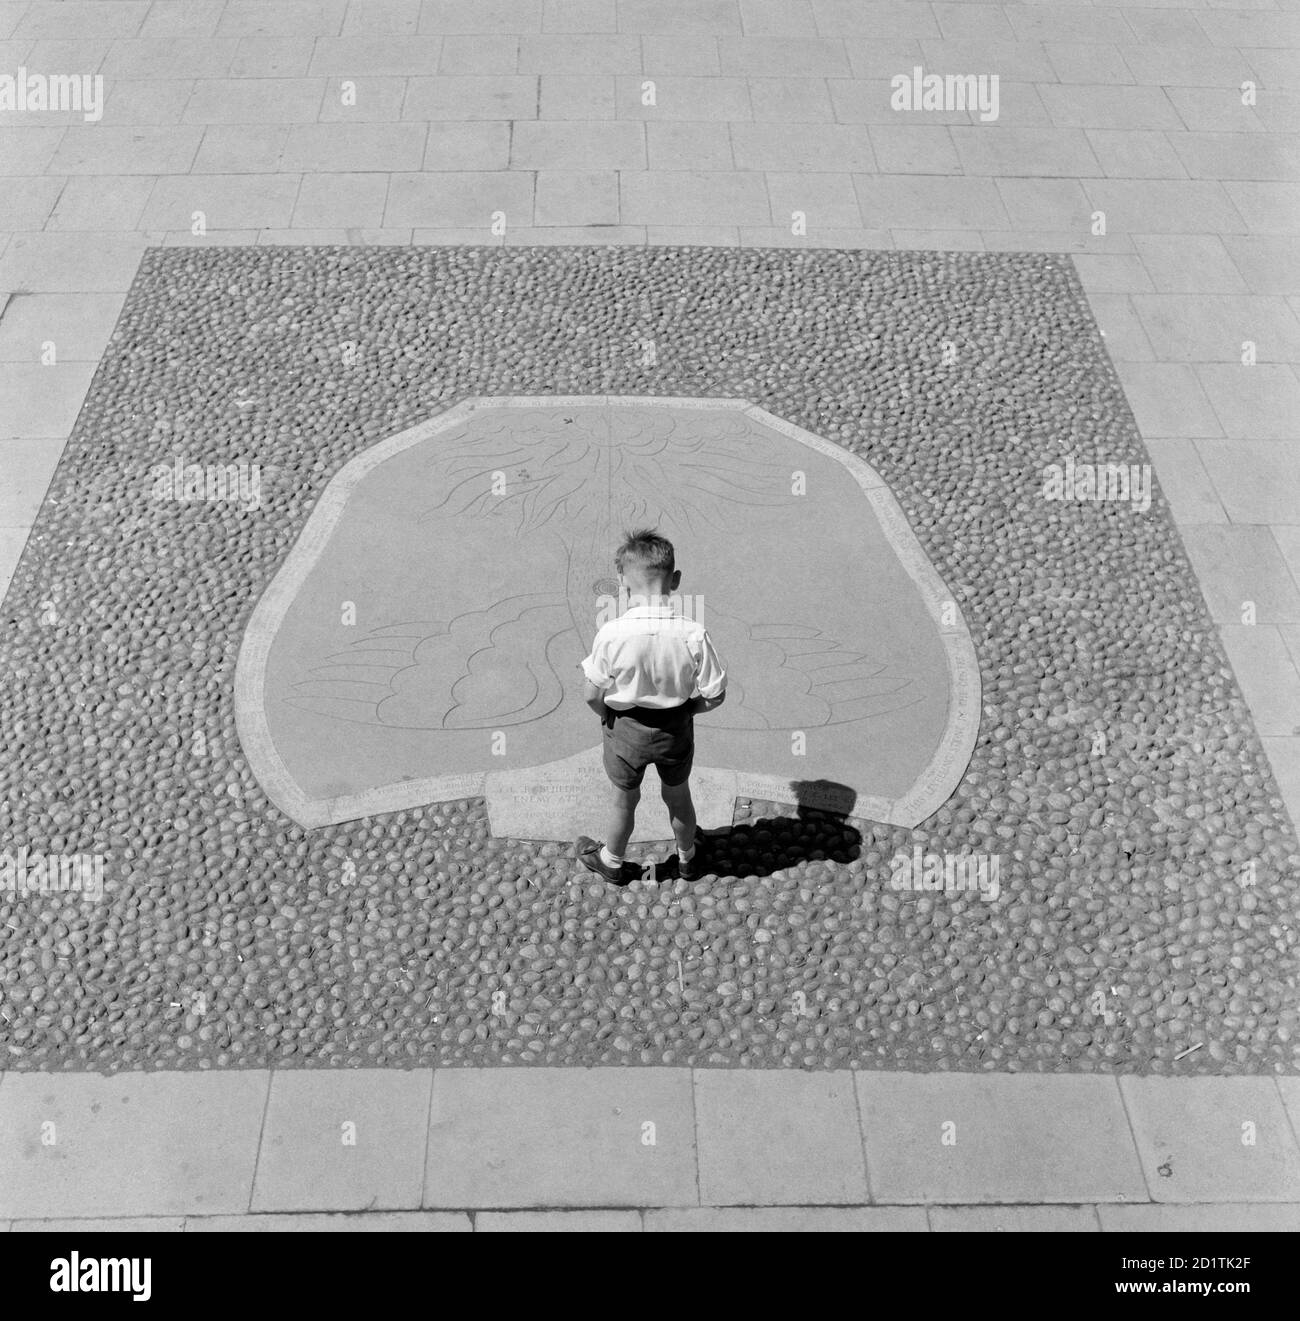 PIEDRA NIVELADORA, Coventry, West Midlands. Un niño pequeño mirando el motivo de phoenix en la Piedra de nivelación que se dio a conocer el 8 de junio de 1946 marcando el inicio de la reconstrucción del centro de la zona dañada por la guerra de Coventry. Fotografiado por Eric de Mare entre 1960 y 1969. Foto de stock